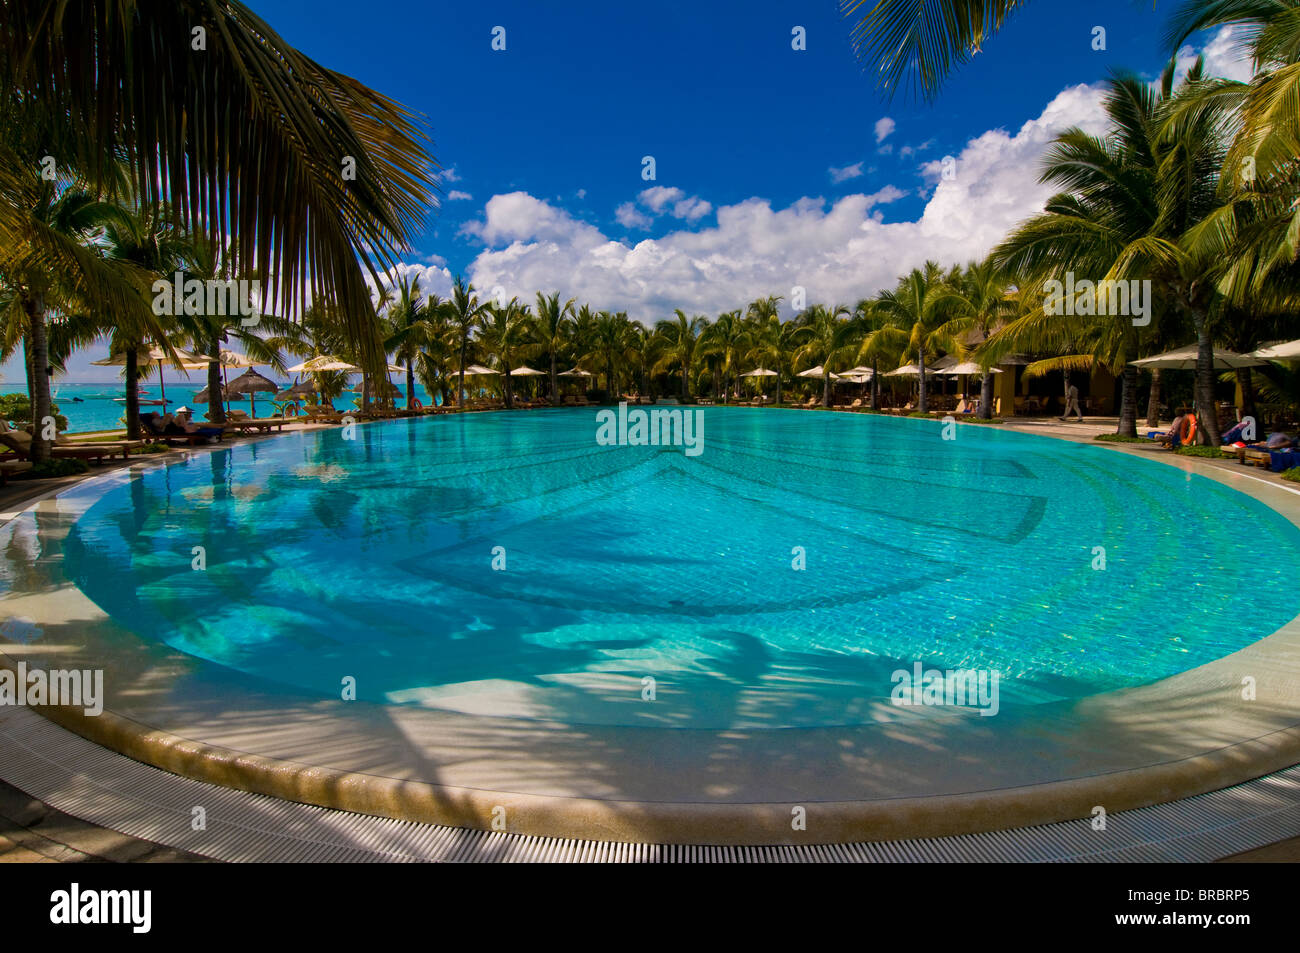 Piscine de la Beachcomber Le Paradis hôtel cinq étoiles, l'Île Maurice, océan Indien Banque D'Images